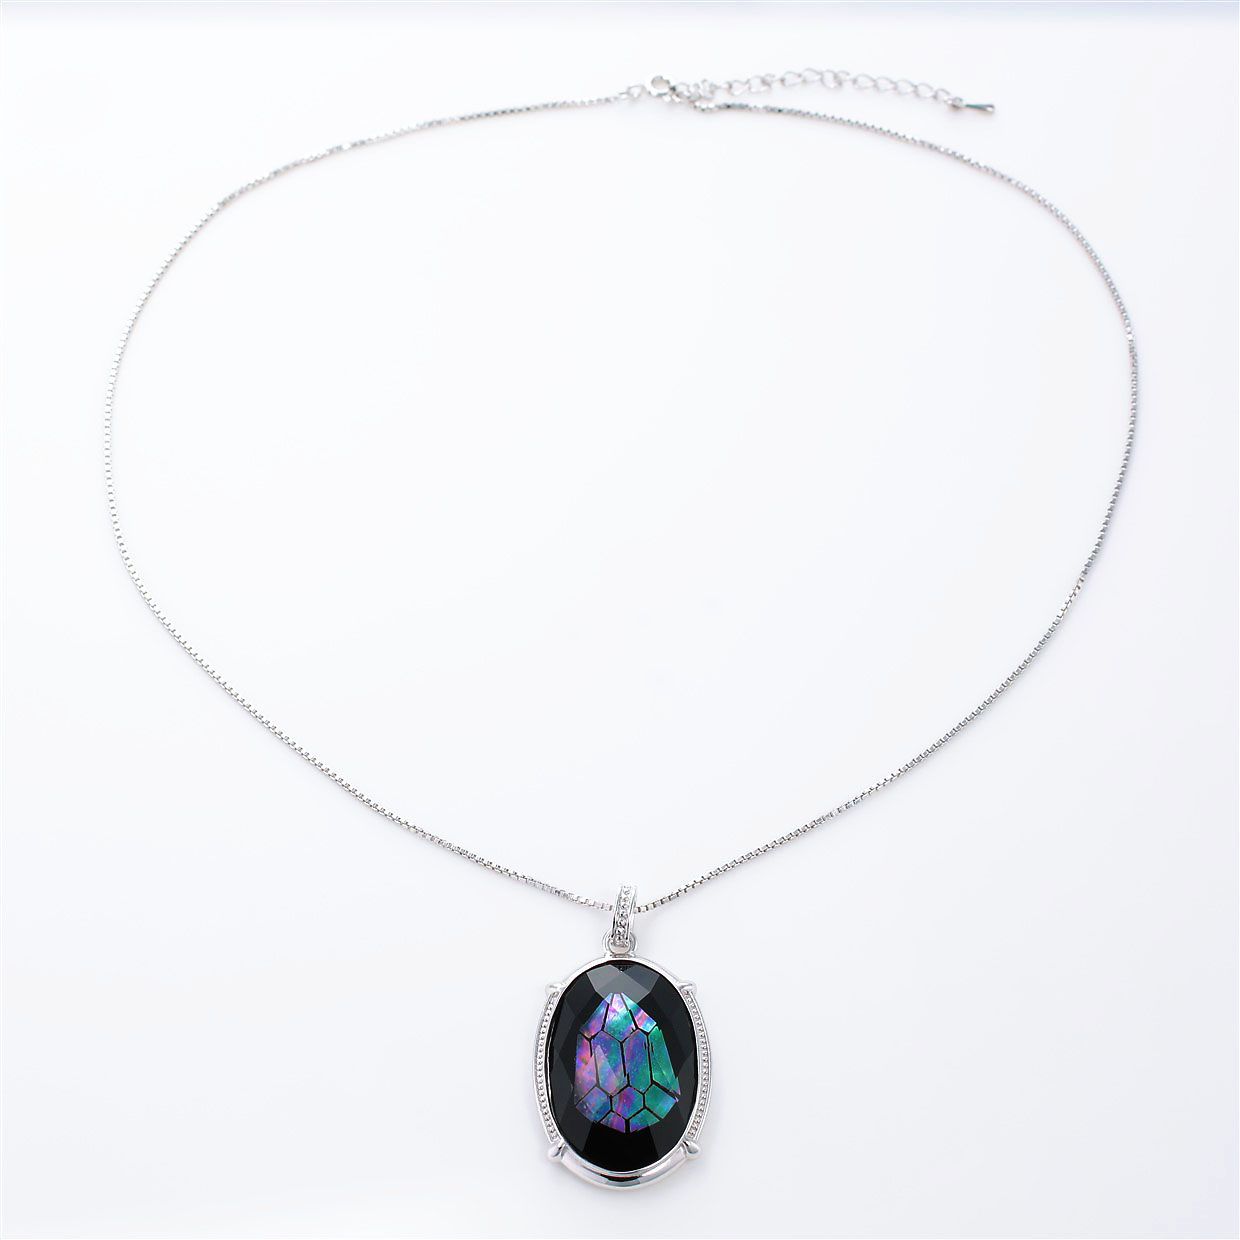 宝石クォーツ・水晶を使った和風のデザインが特徴的な和の彩ネックレス/ペンダントの商品写真です。型番：CR201008-01~02 画像その1